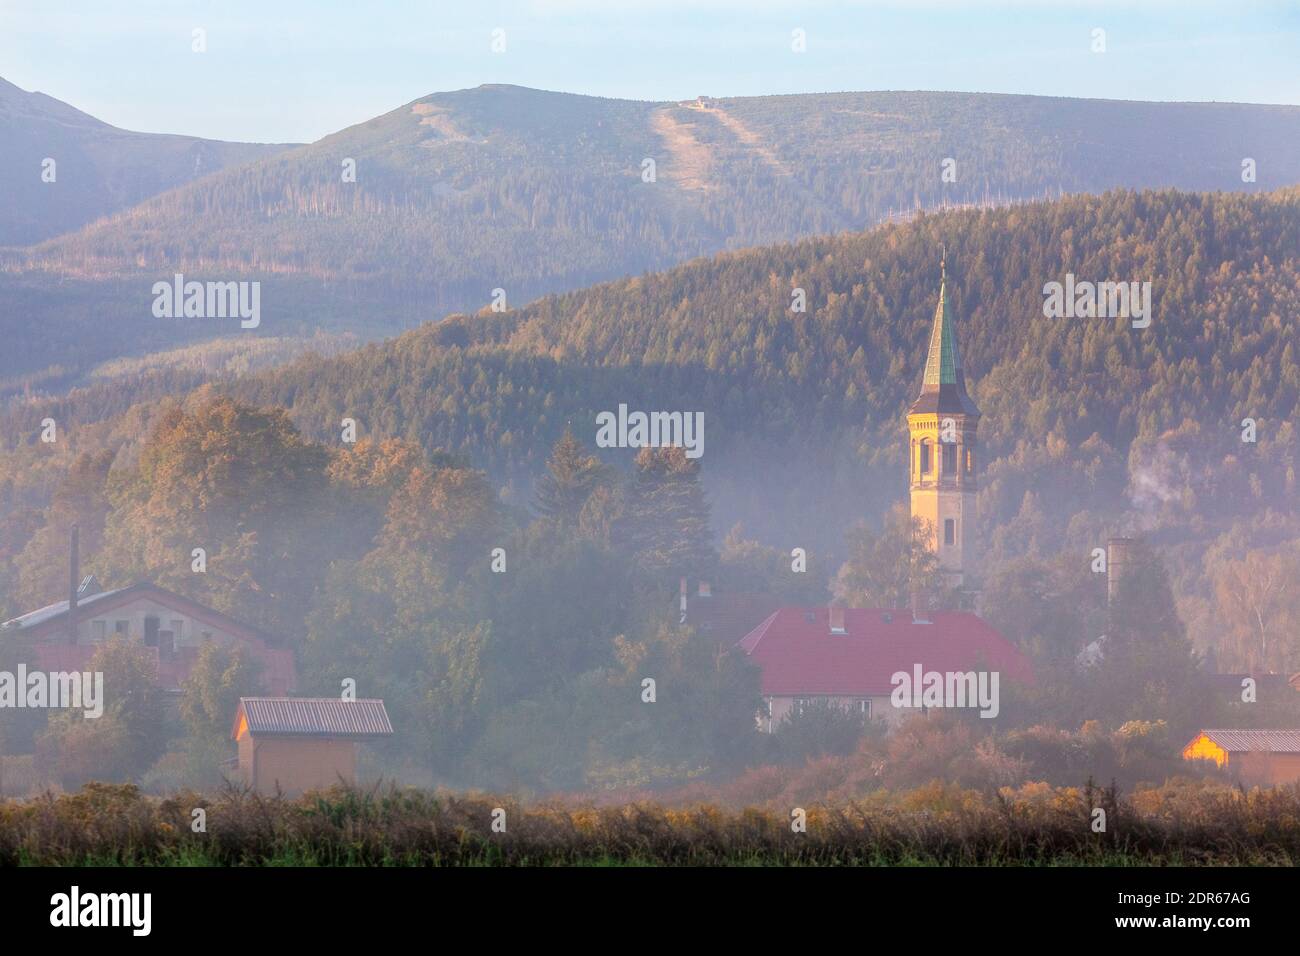 Sudetes, the Karkonosze Mountains, the vicinity of Jelenia Gora, Poland Stock Photo